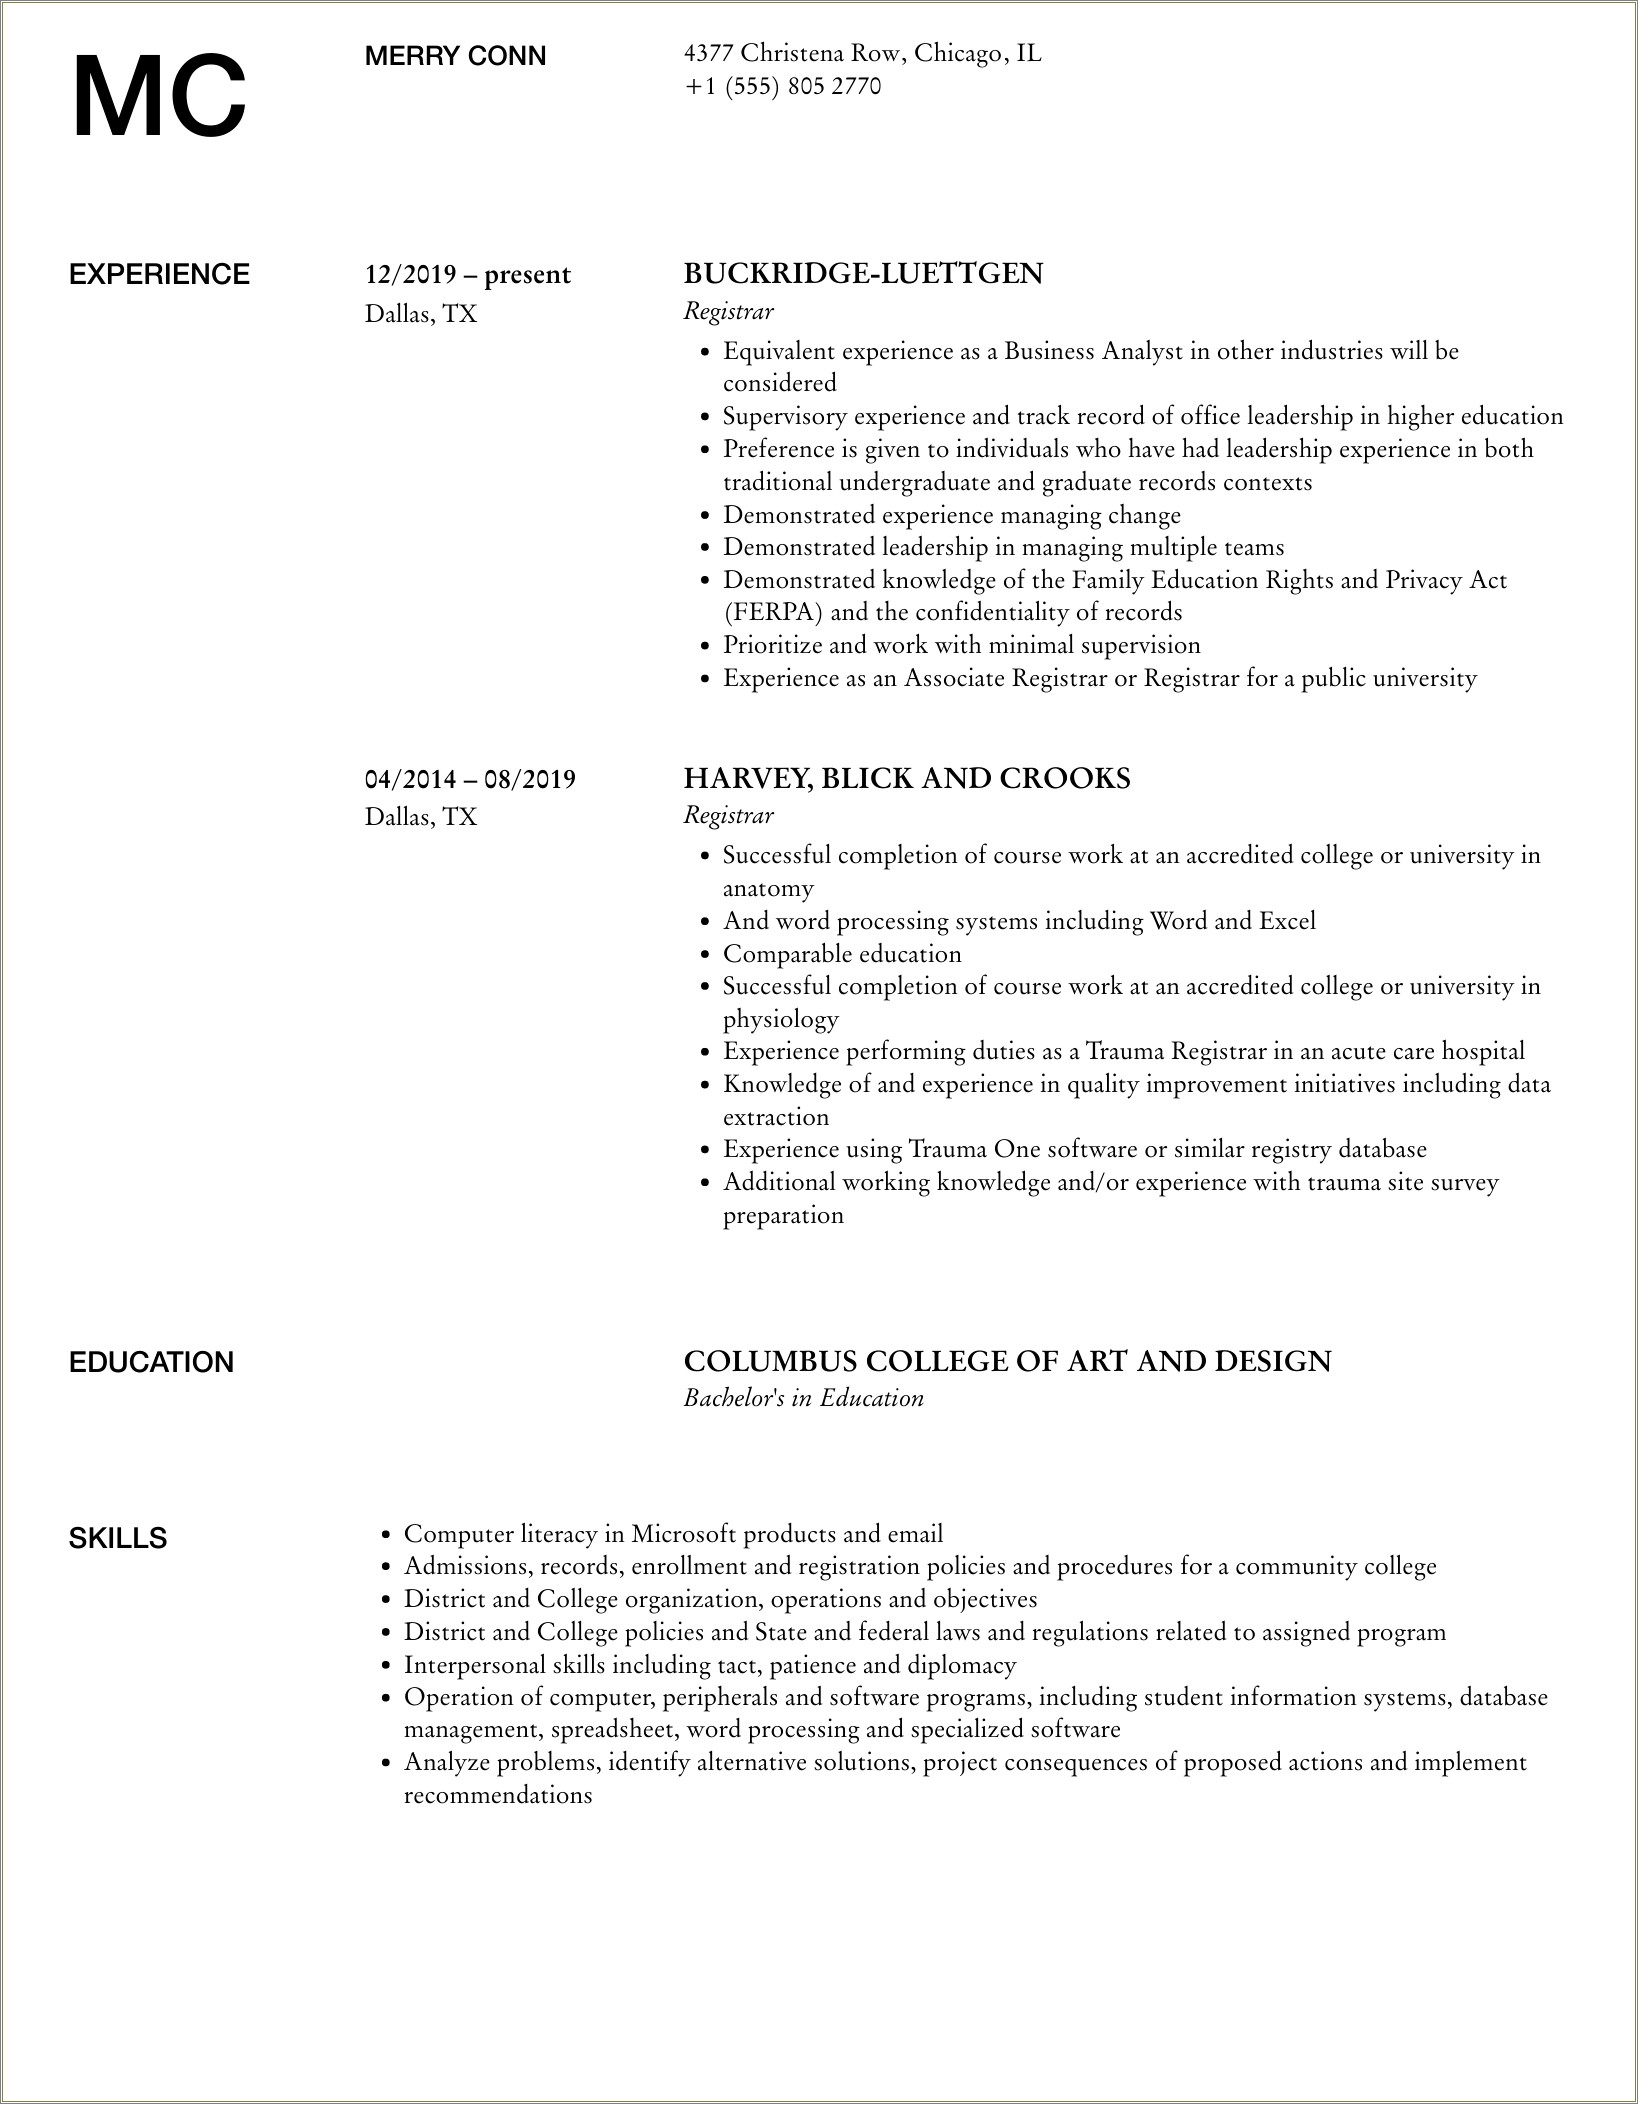 Sample Resume For Registrar Position